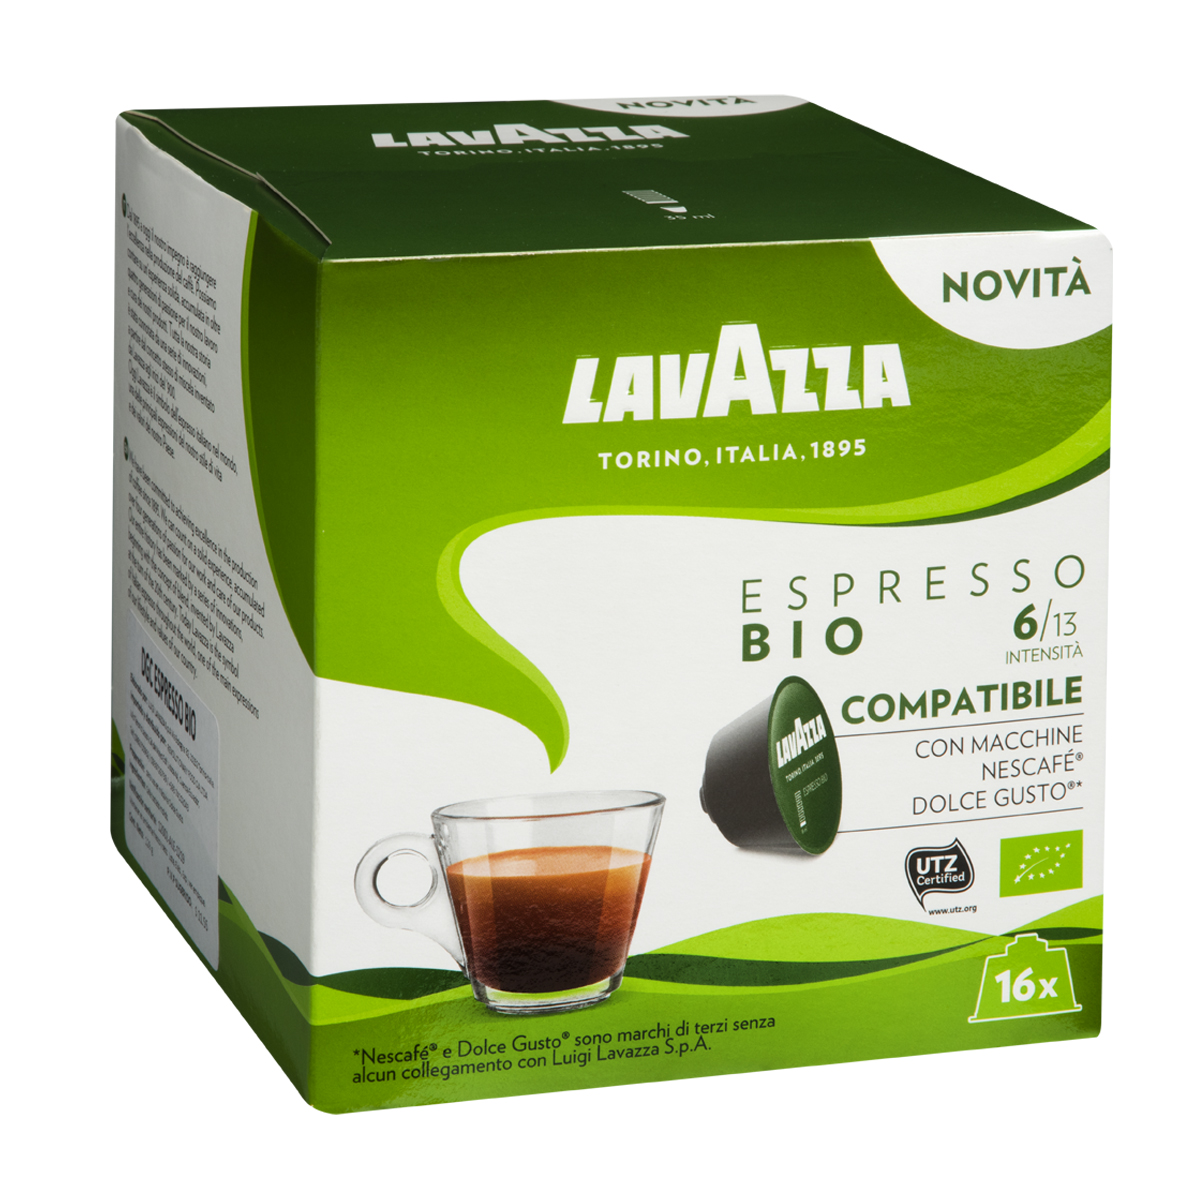 Cápsulas café Espresso descafeinado Lavazza - 10 uds - E.leclerc